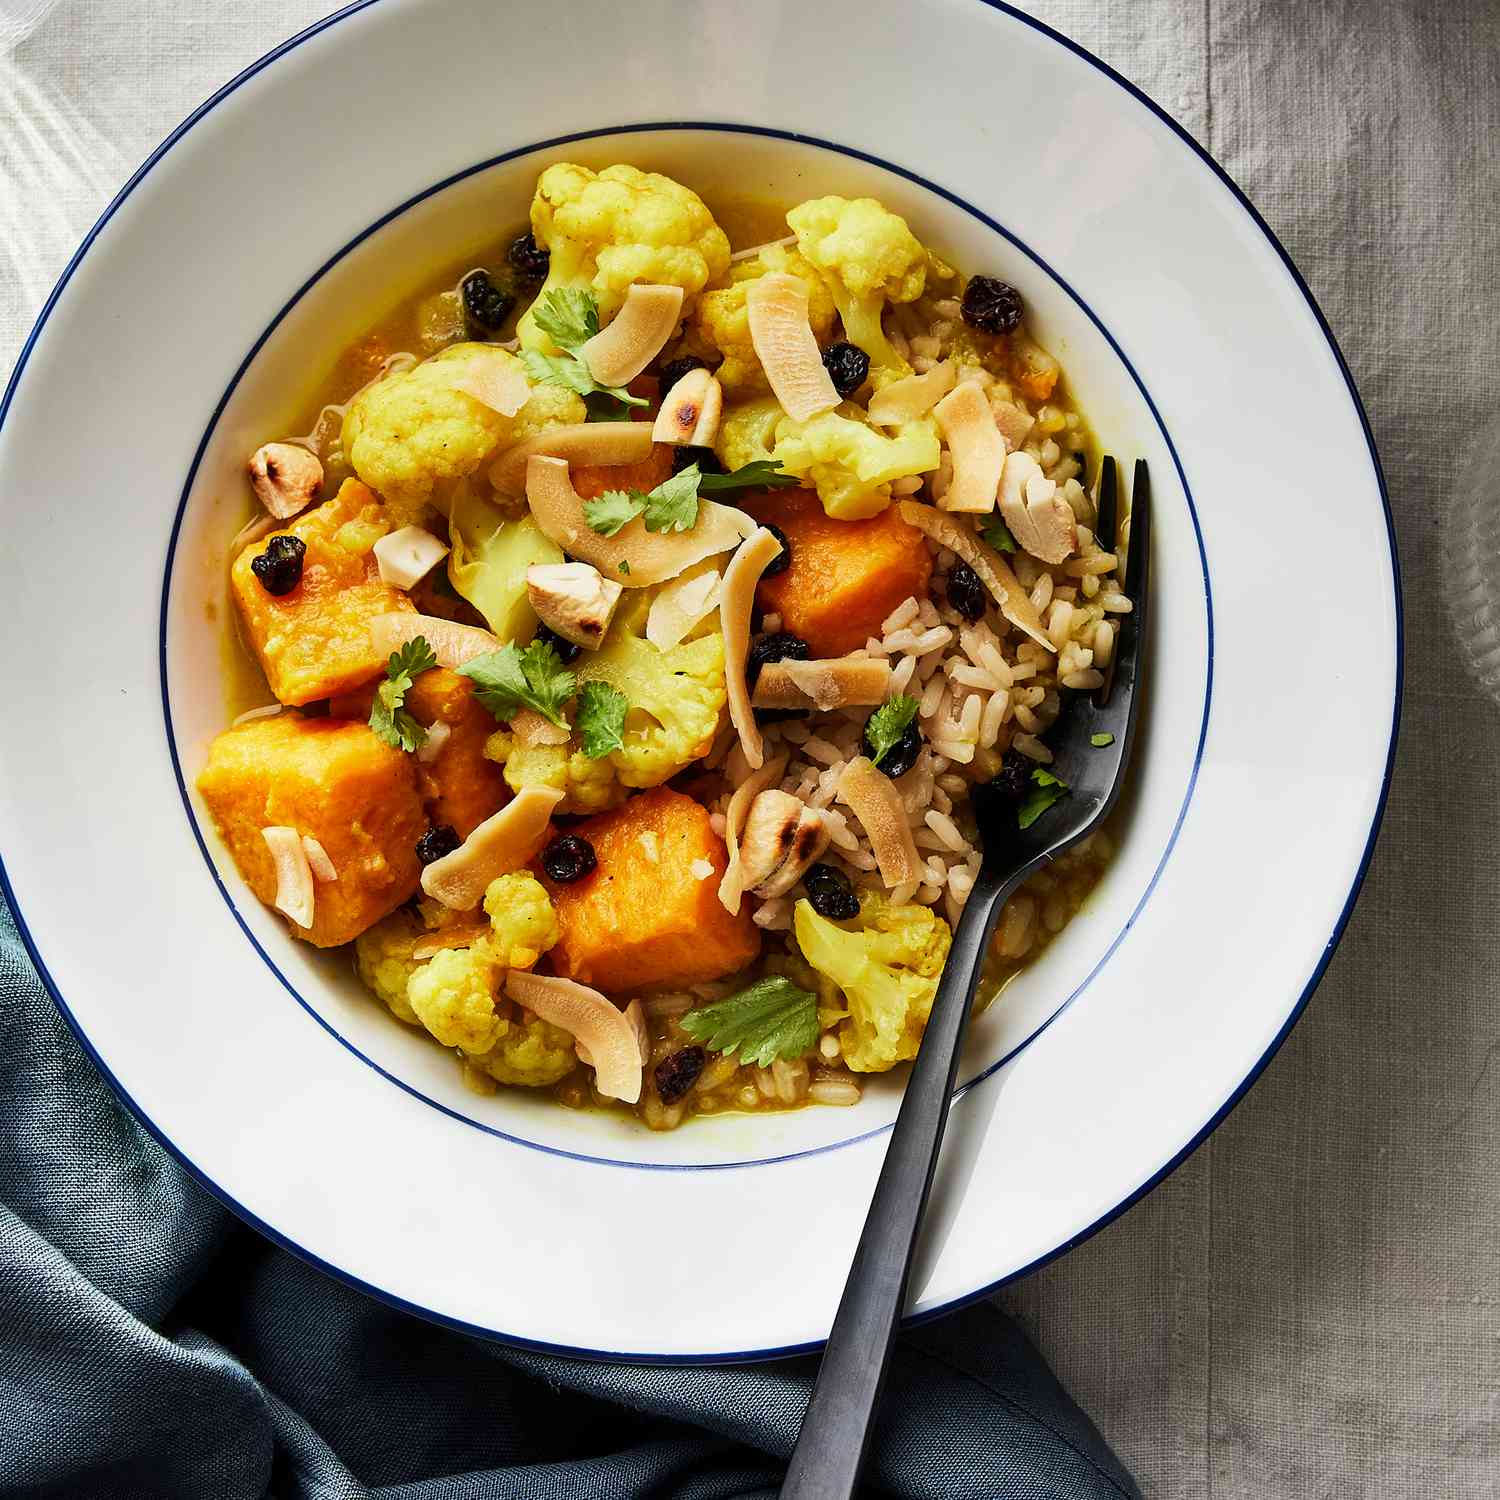 Foto de la receta de camote y coliflor al curry en olla de cocción lenta con coco y anacardos servidos en un tazón.